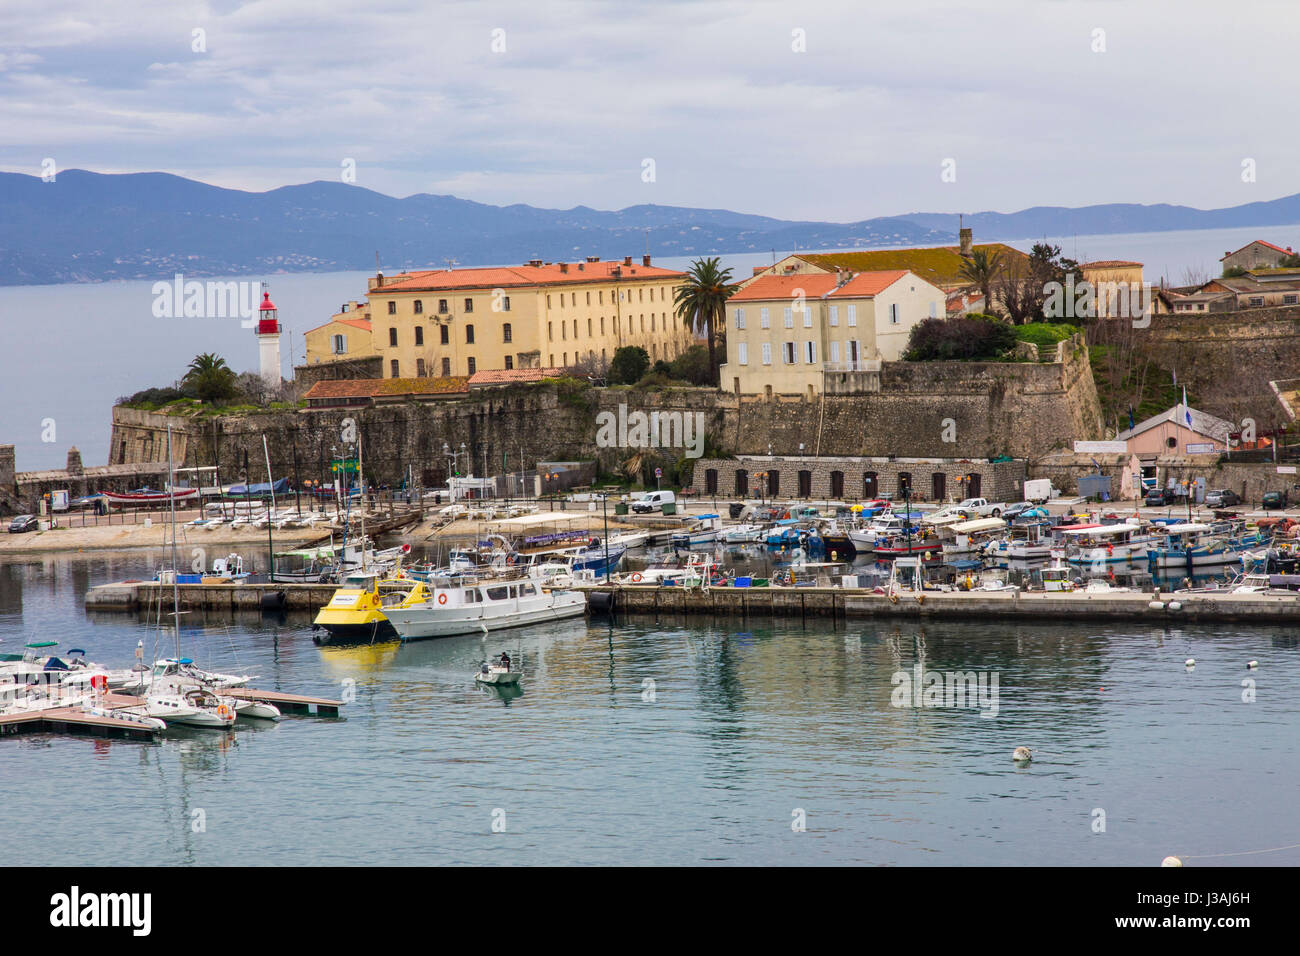 Una vista del puerto de Ajaccio y su ciudadela amurallada del siglo 16. Ajaccio, Córcega. Foto de stock